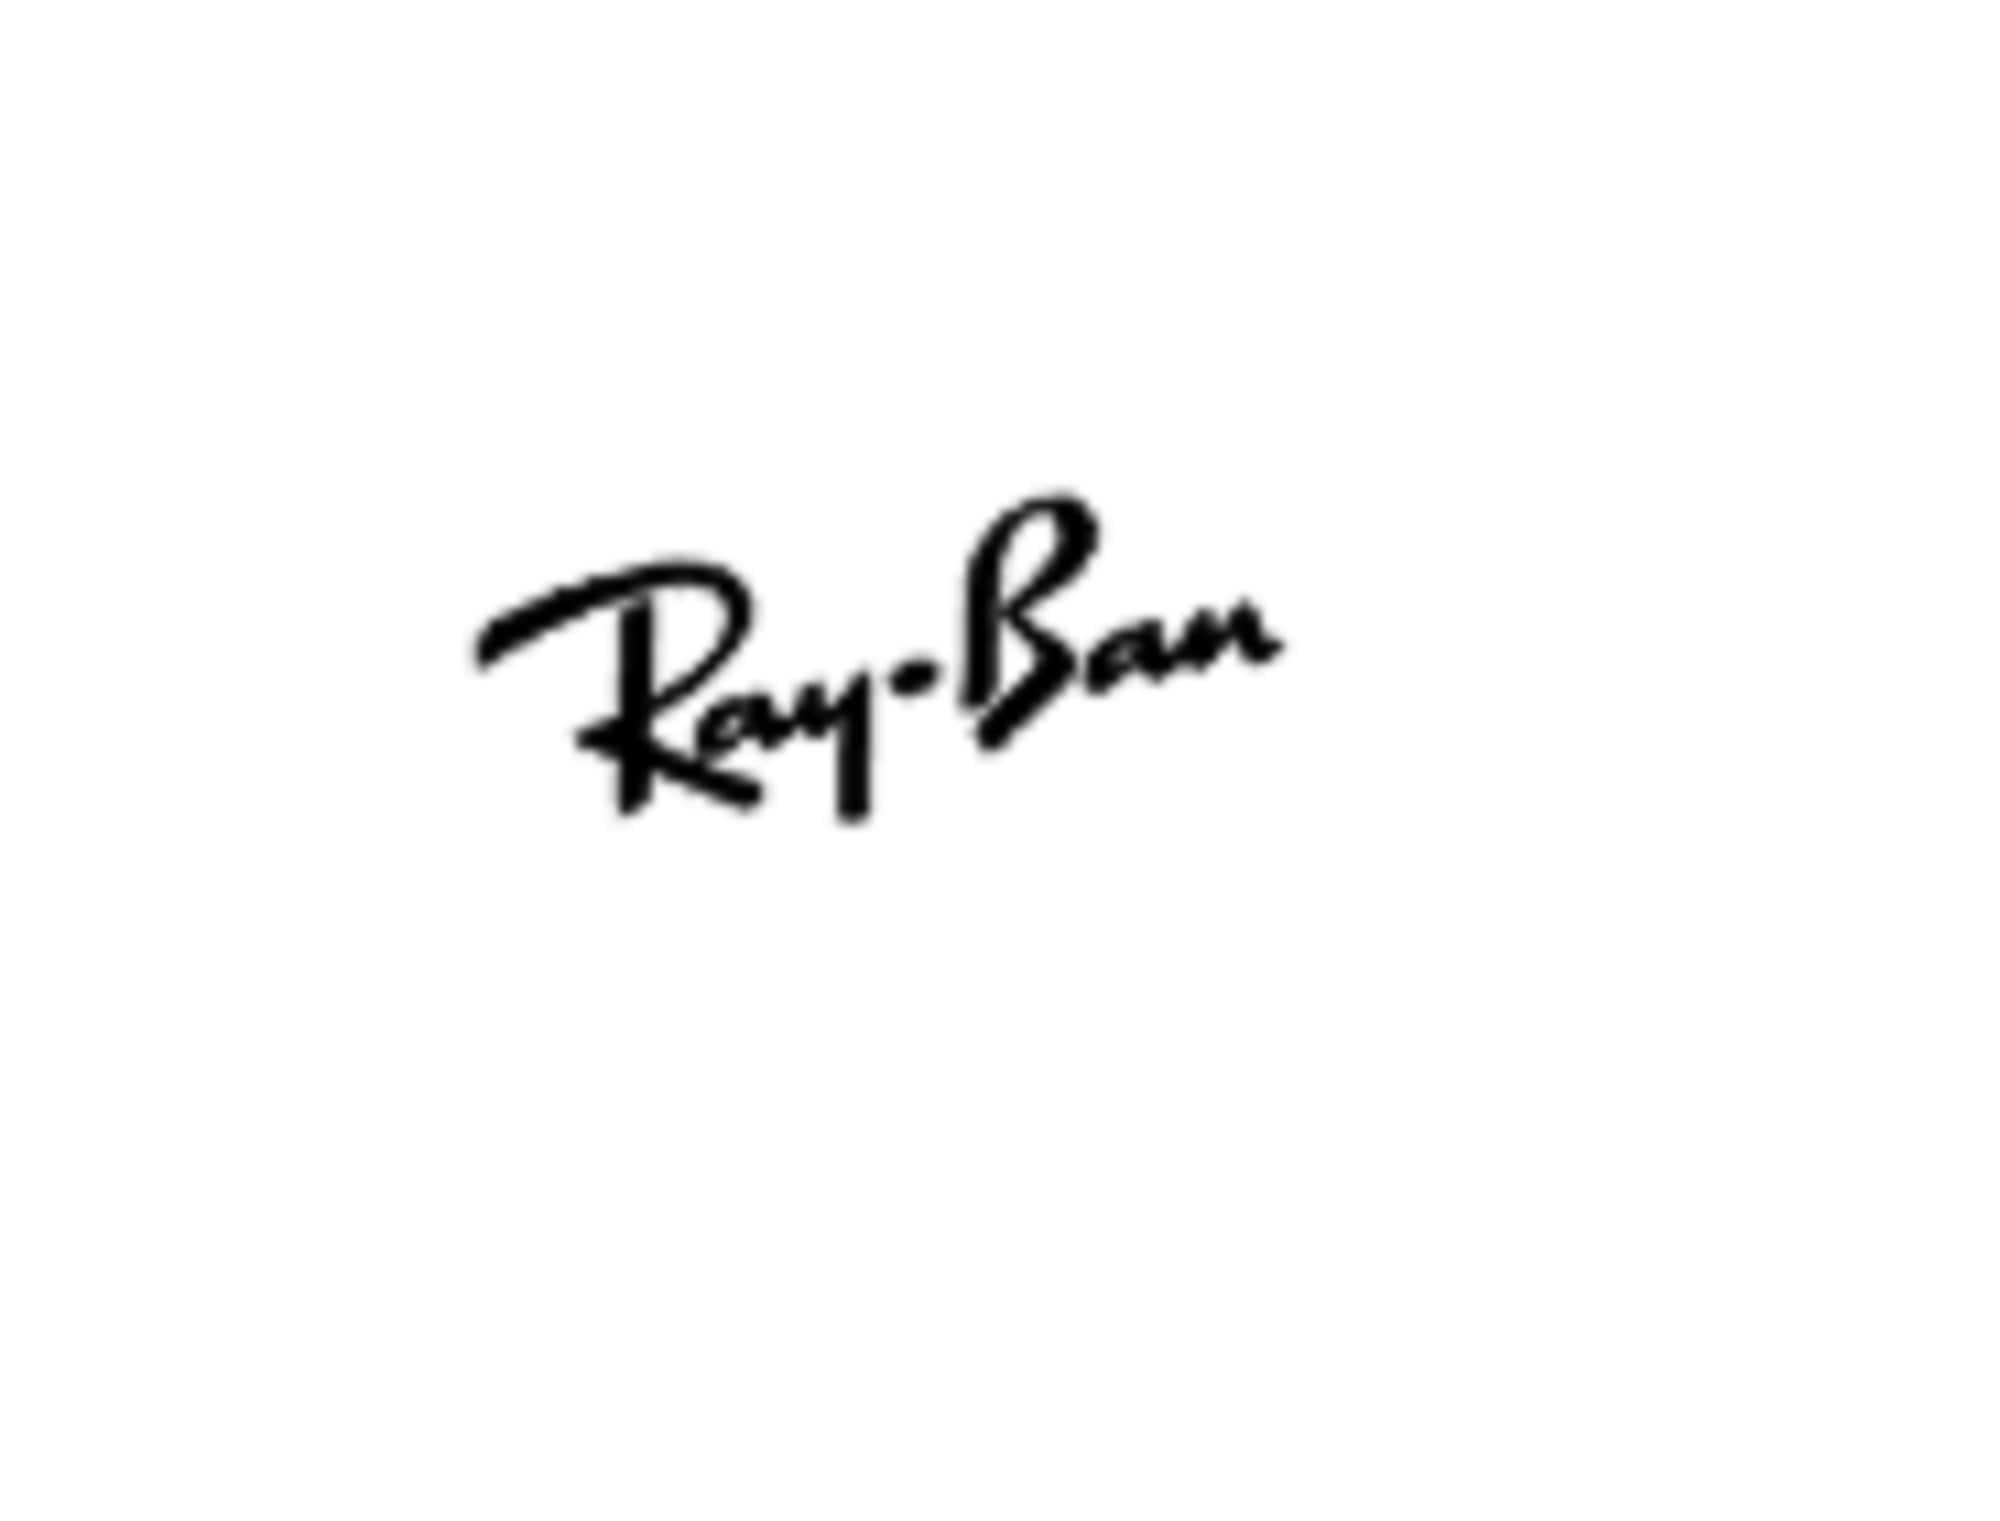 Ray ban logo - Etsy España